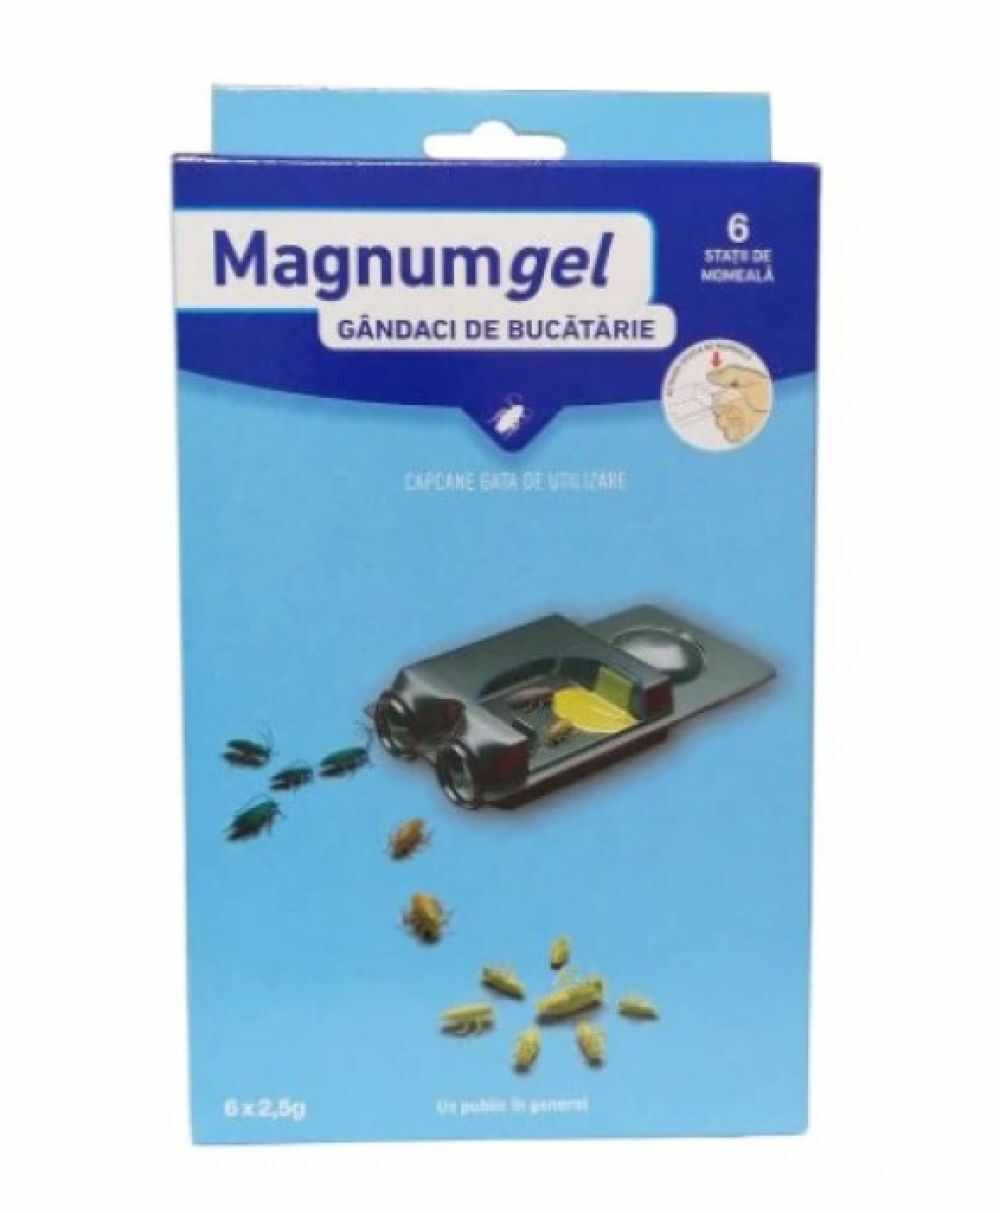 Magnum Gel Capcana Gândaci ( 6 x 25g)